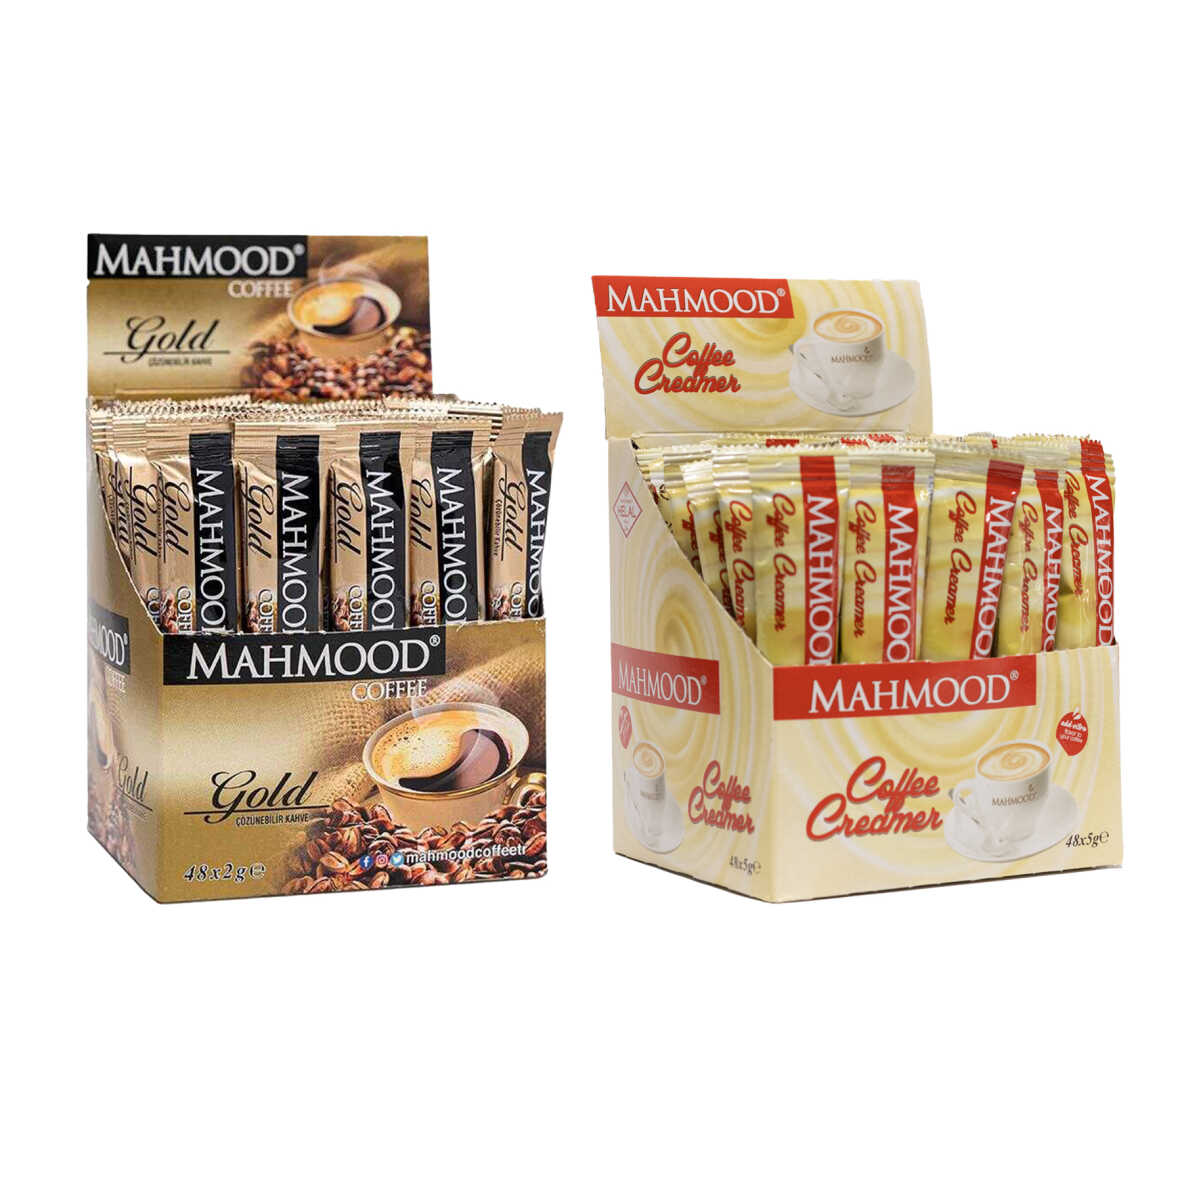 Mahmood Coffee Gold 2 gr x 48 adet & Mahmood Coffee Stick Kahve Kreması 5 gr x 48 adet - 1